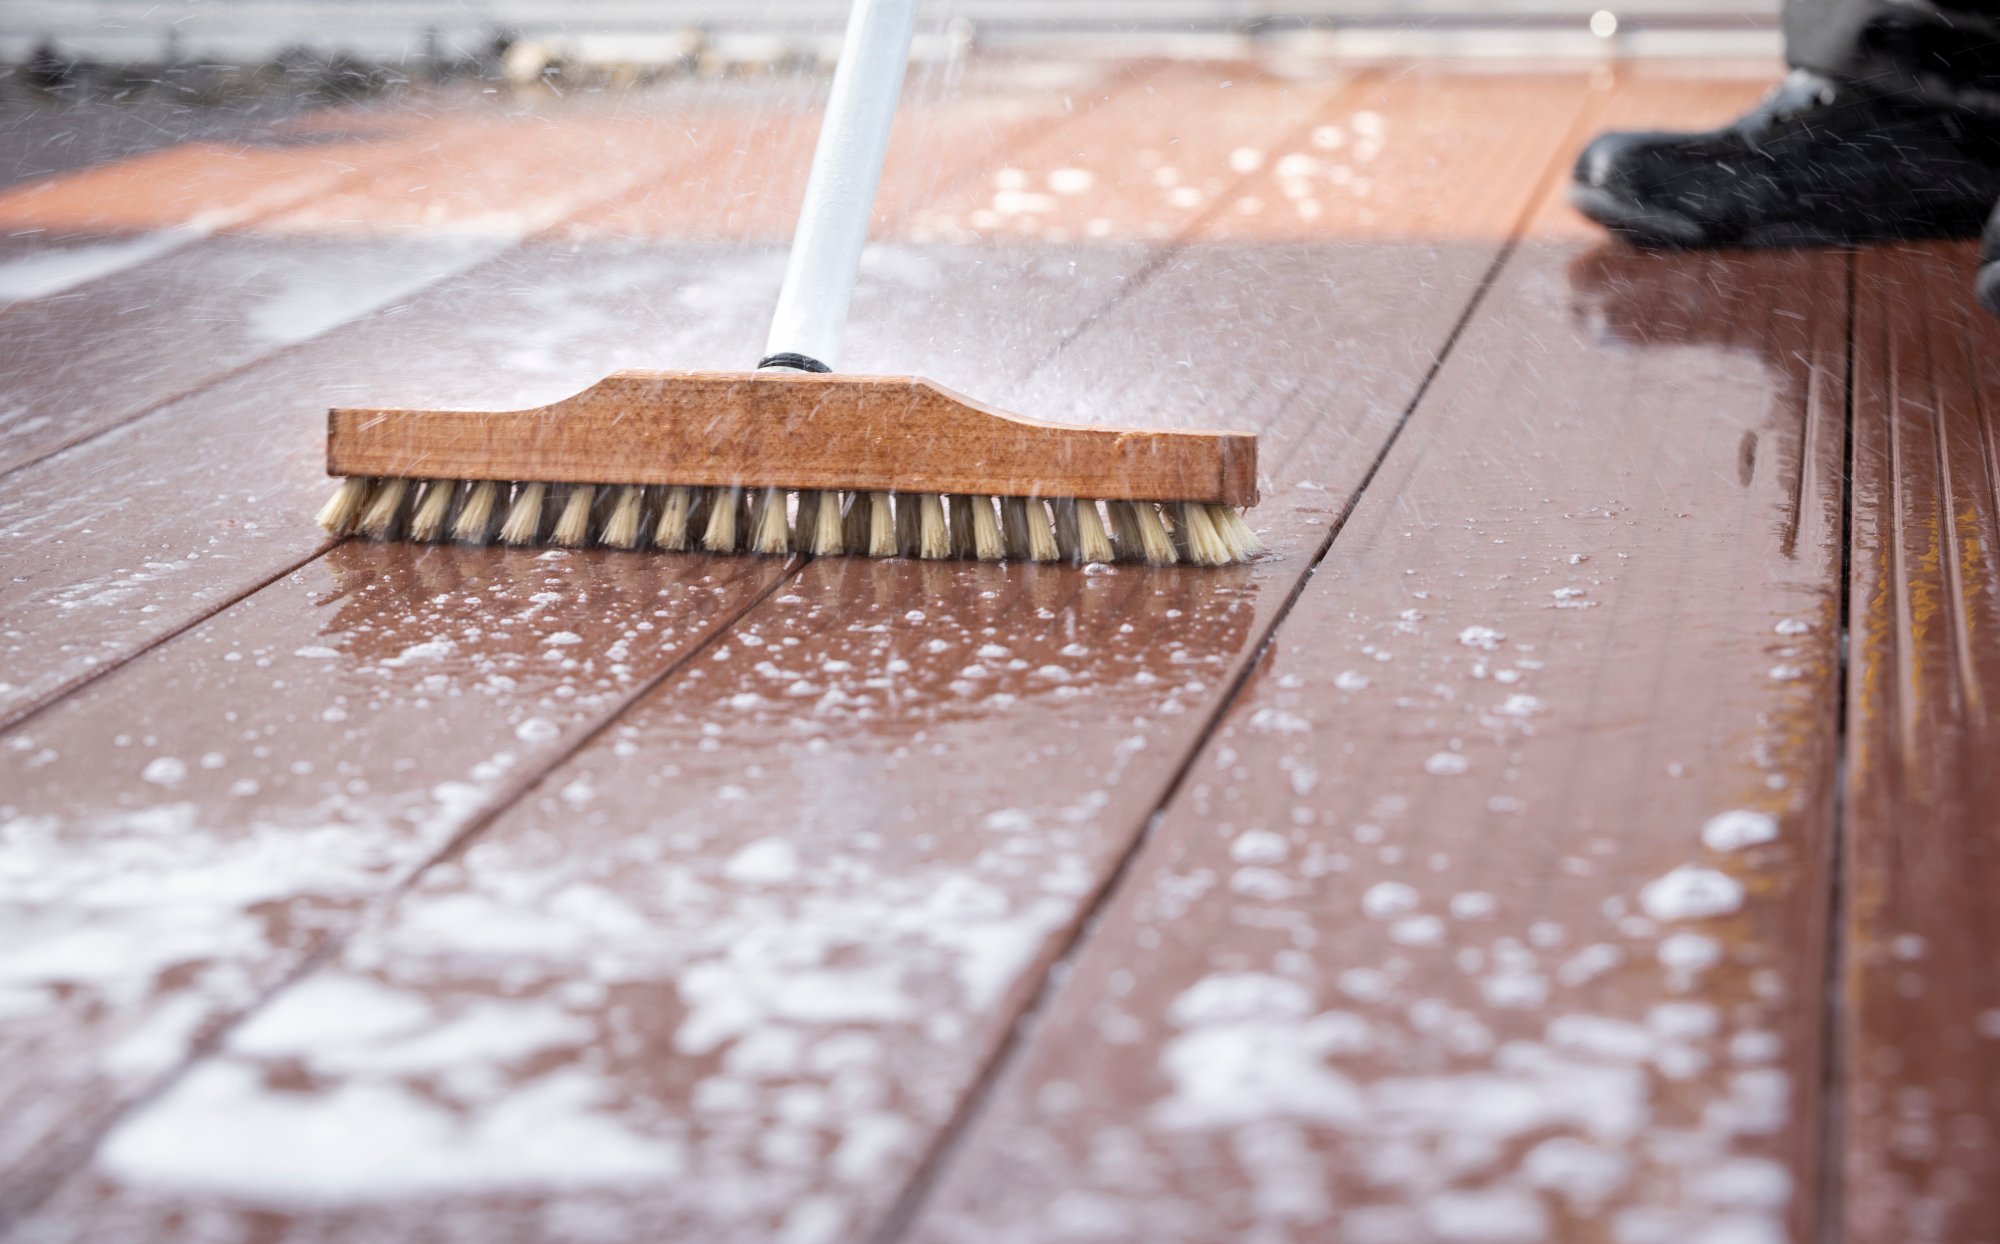 Entretenir sa terrasse : comment faire le nettoyage du carrelage exterieur 